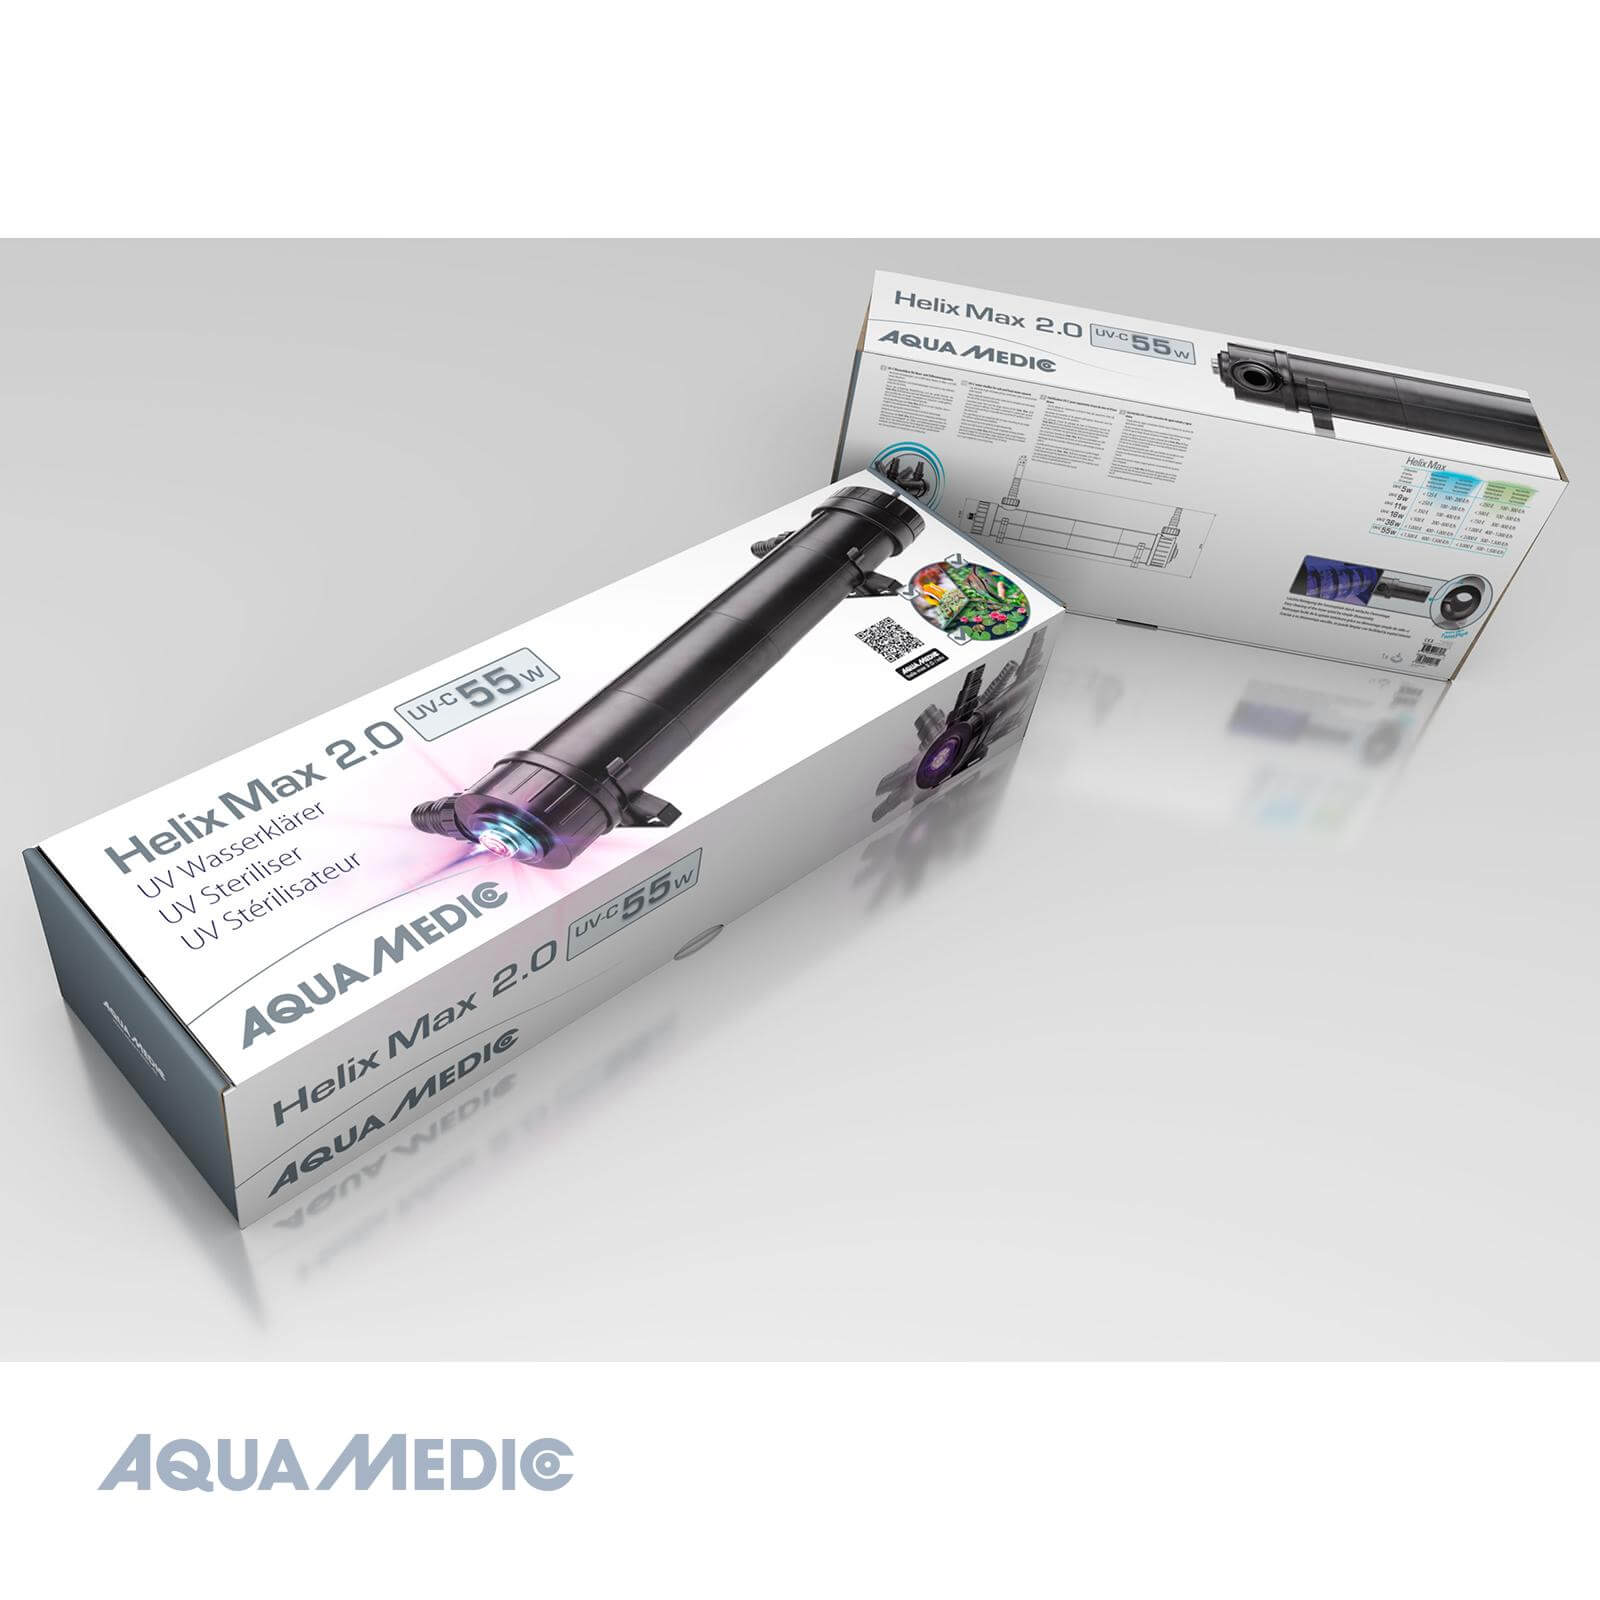 Aqua Medic helix max 2.0 55 w